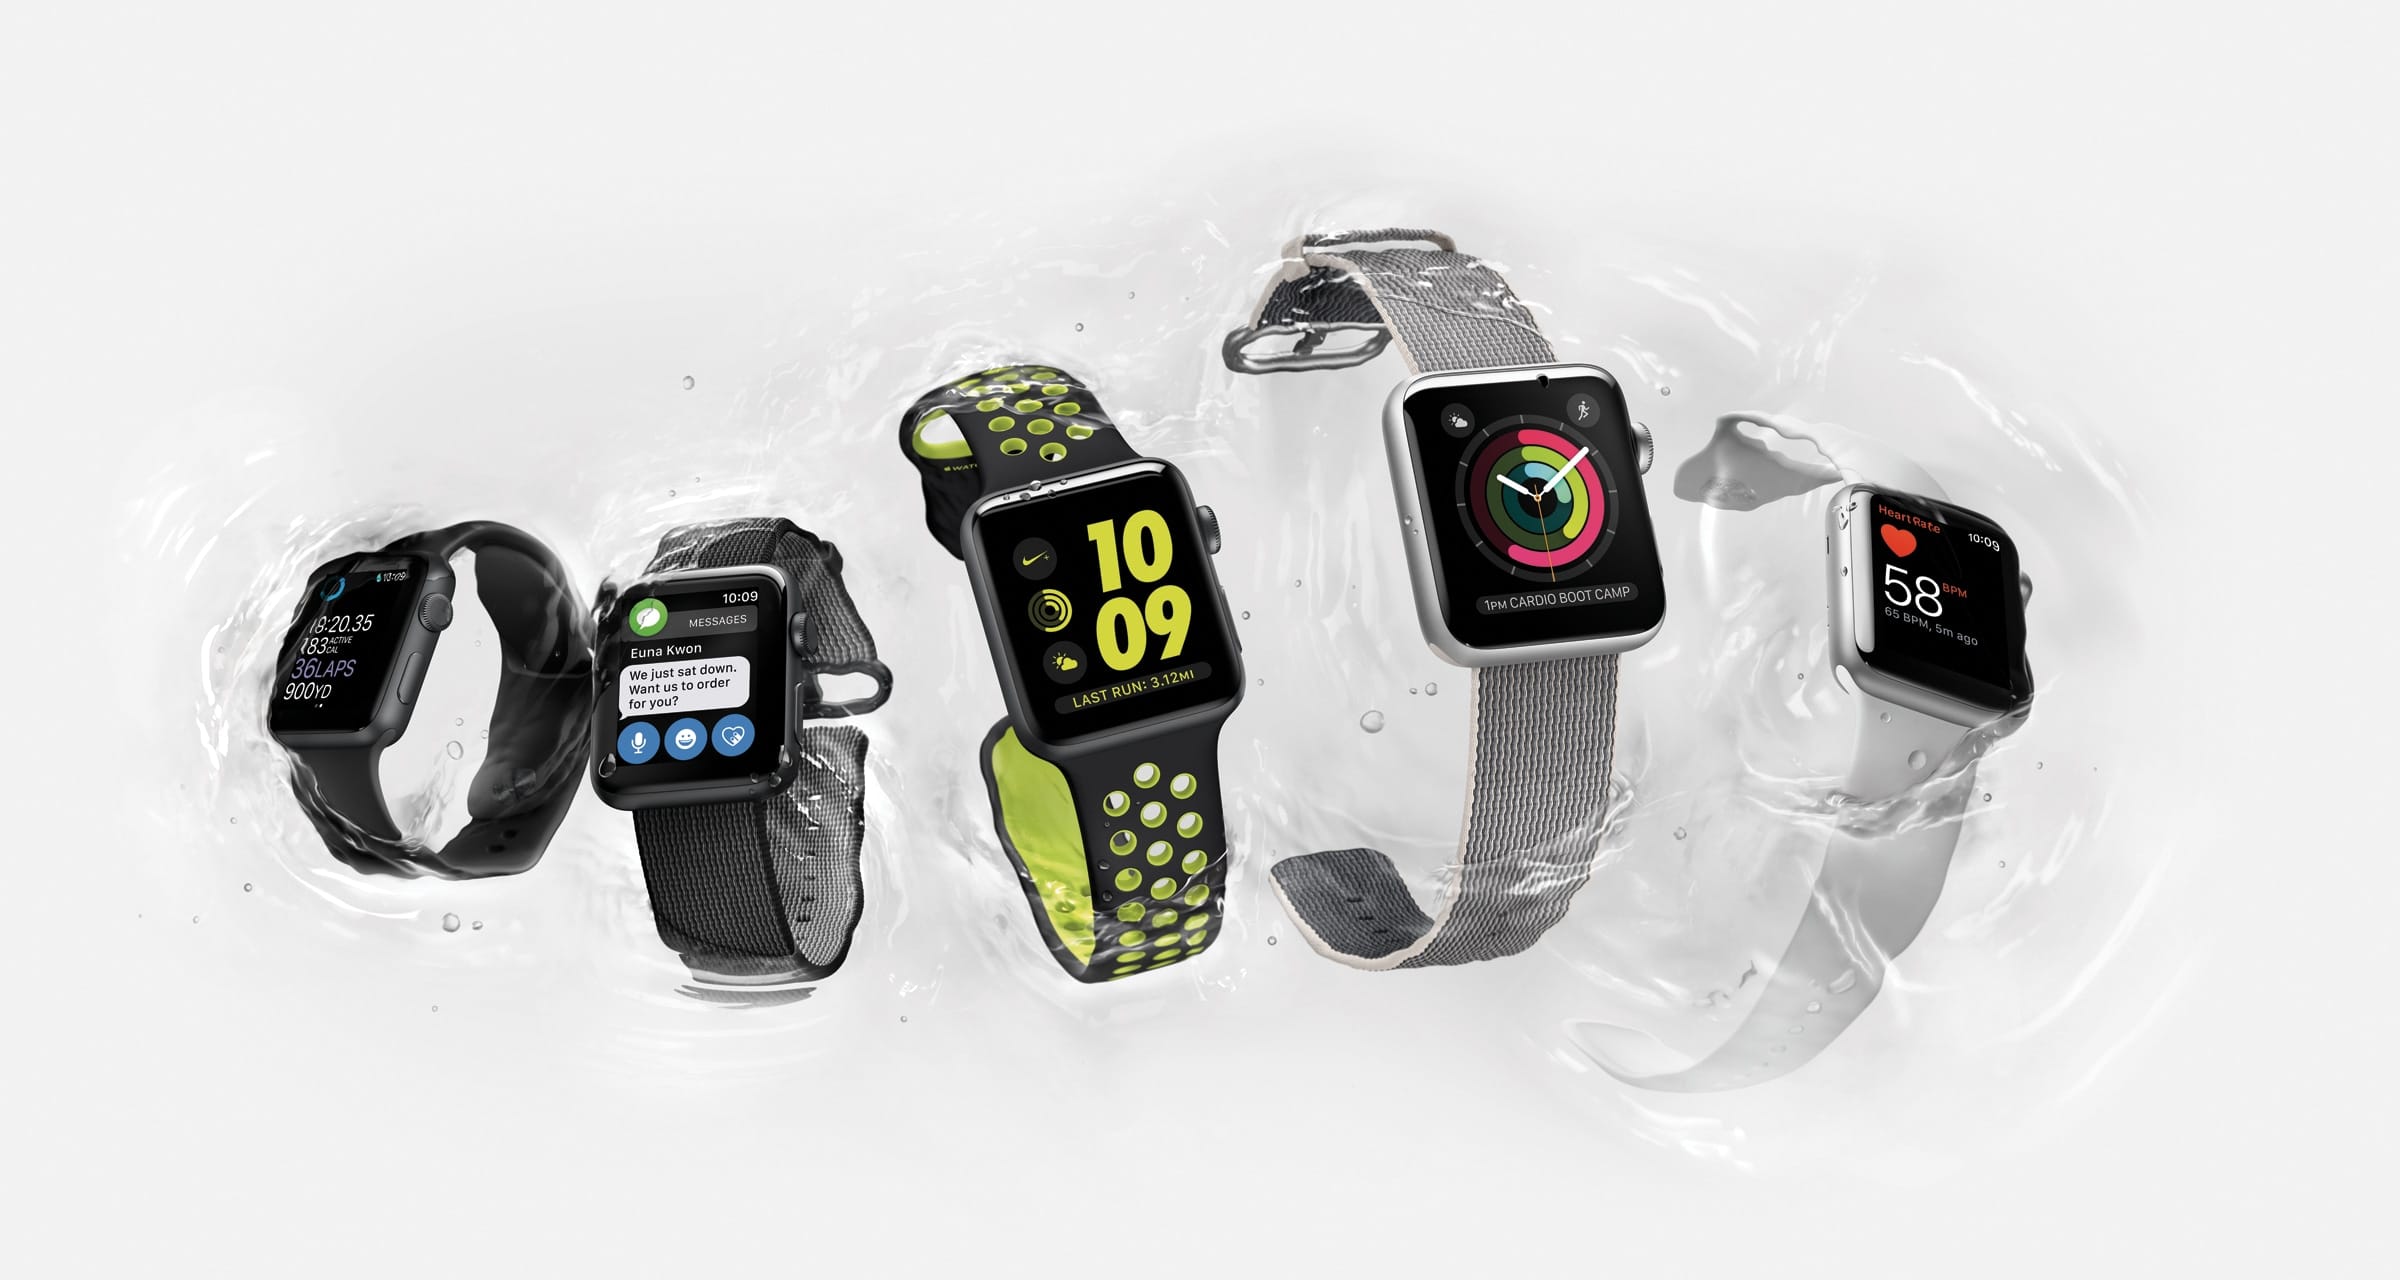 Modelos de Apple Watch Series 2 molhados